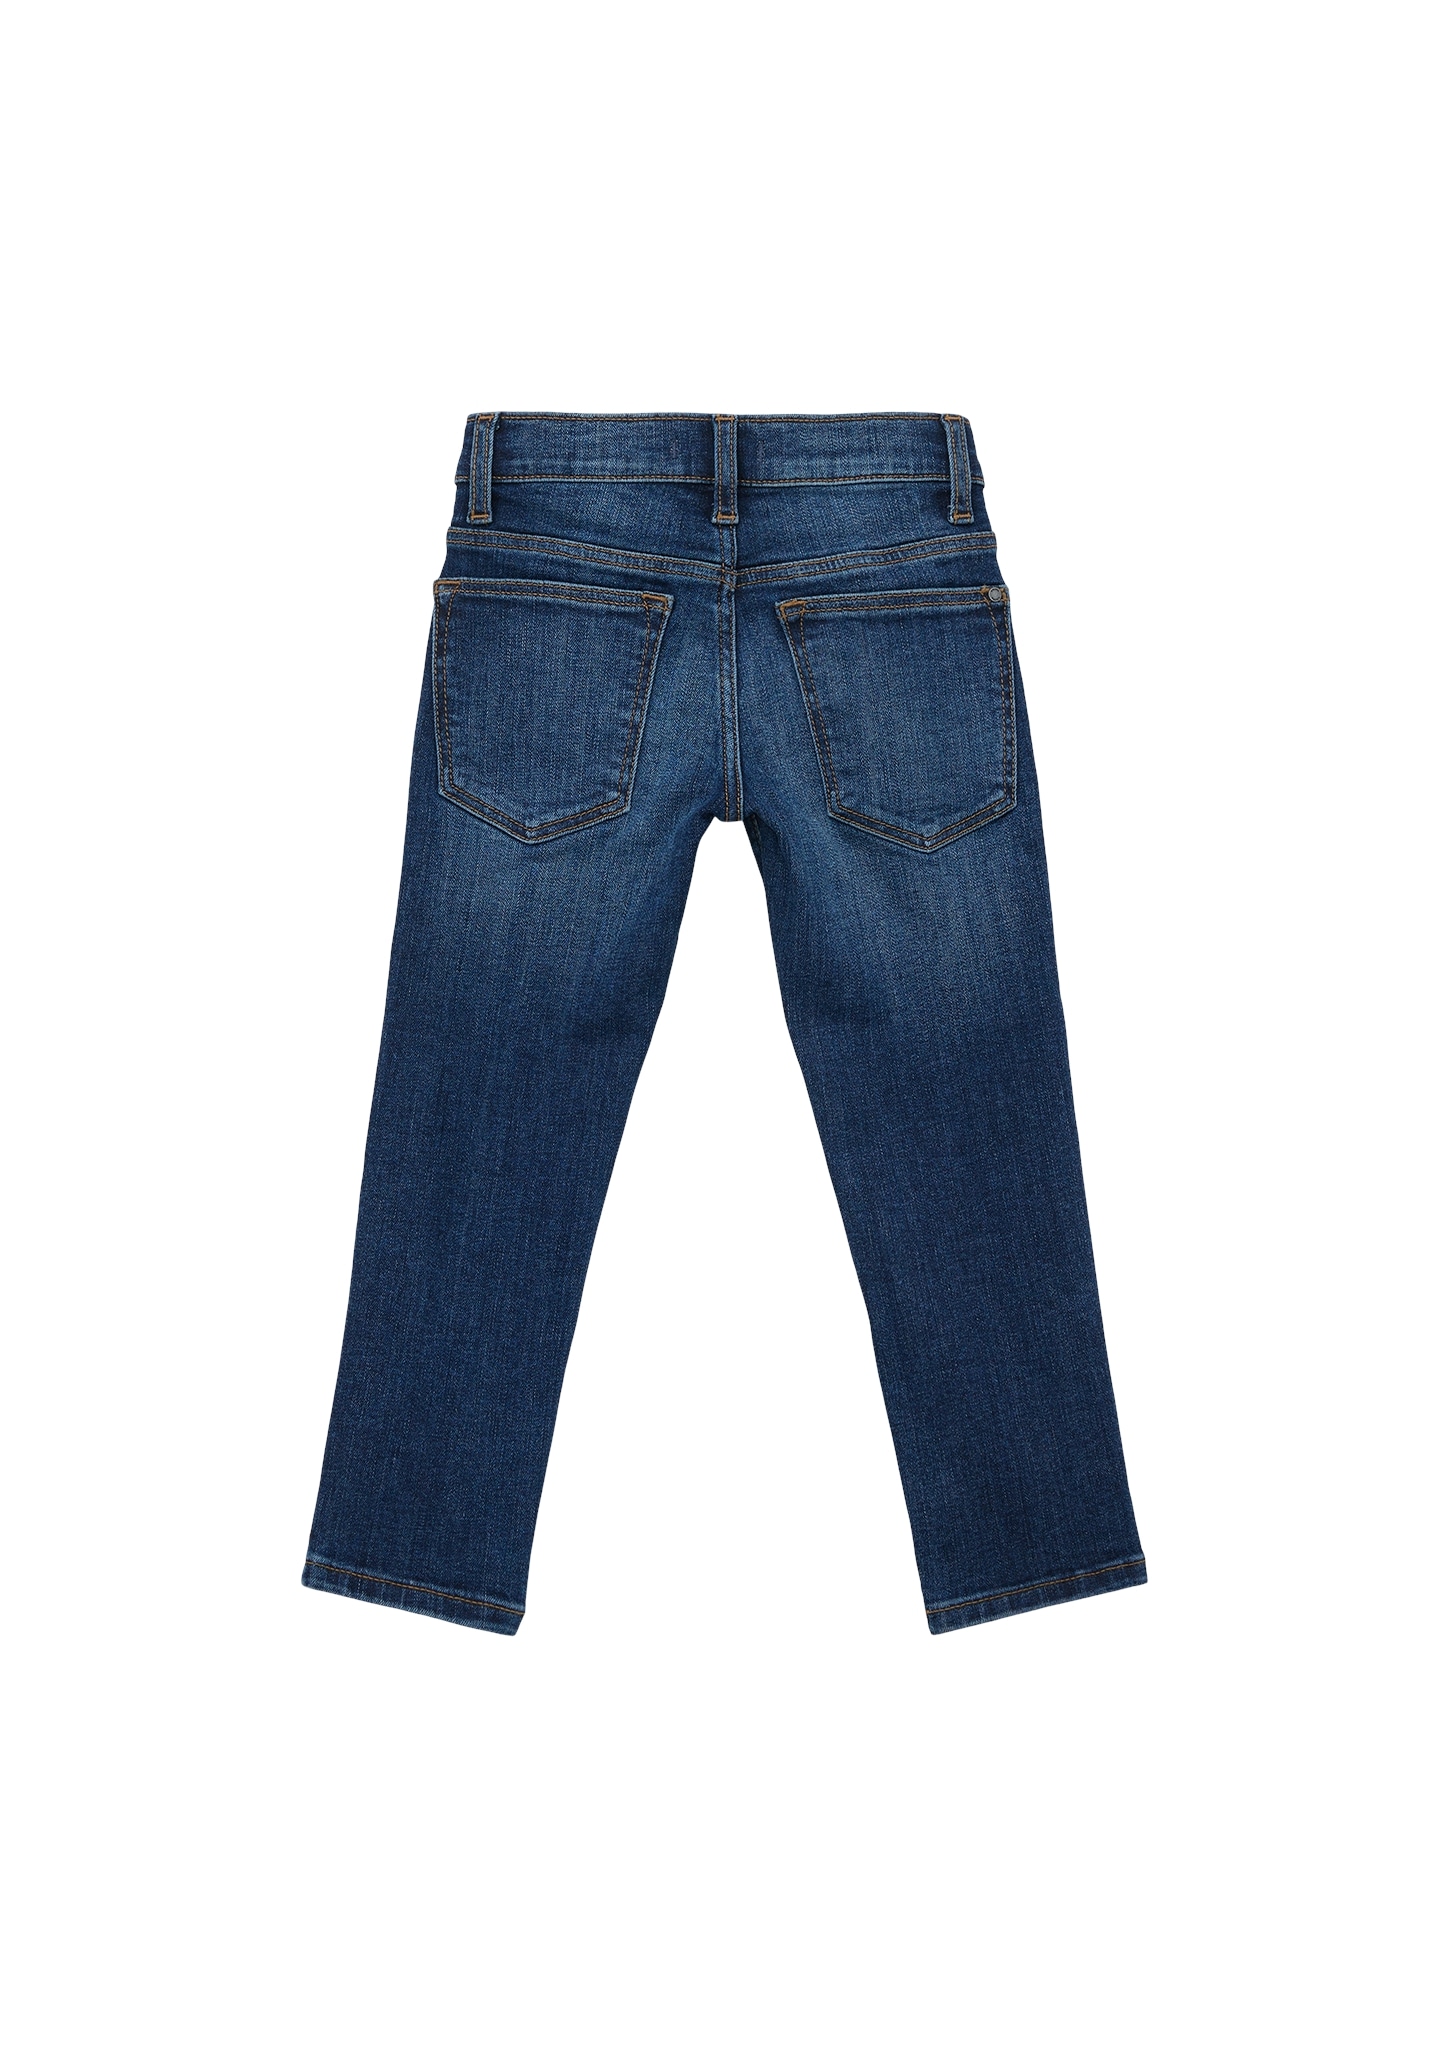 s.Oliver Junior online mit Jeans, Beinverlauf Bequeme geradem kaufen BAUR 